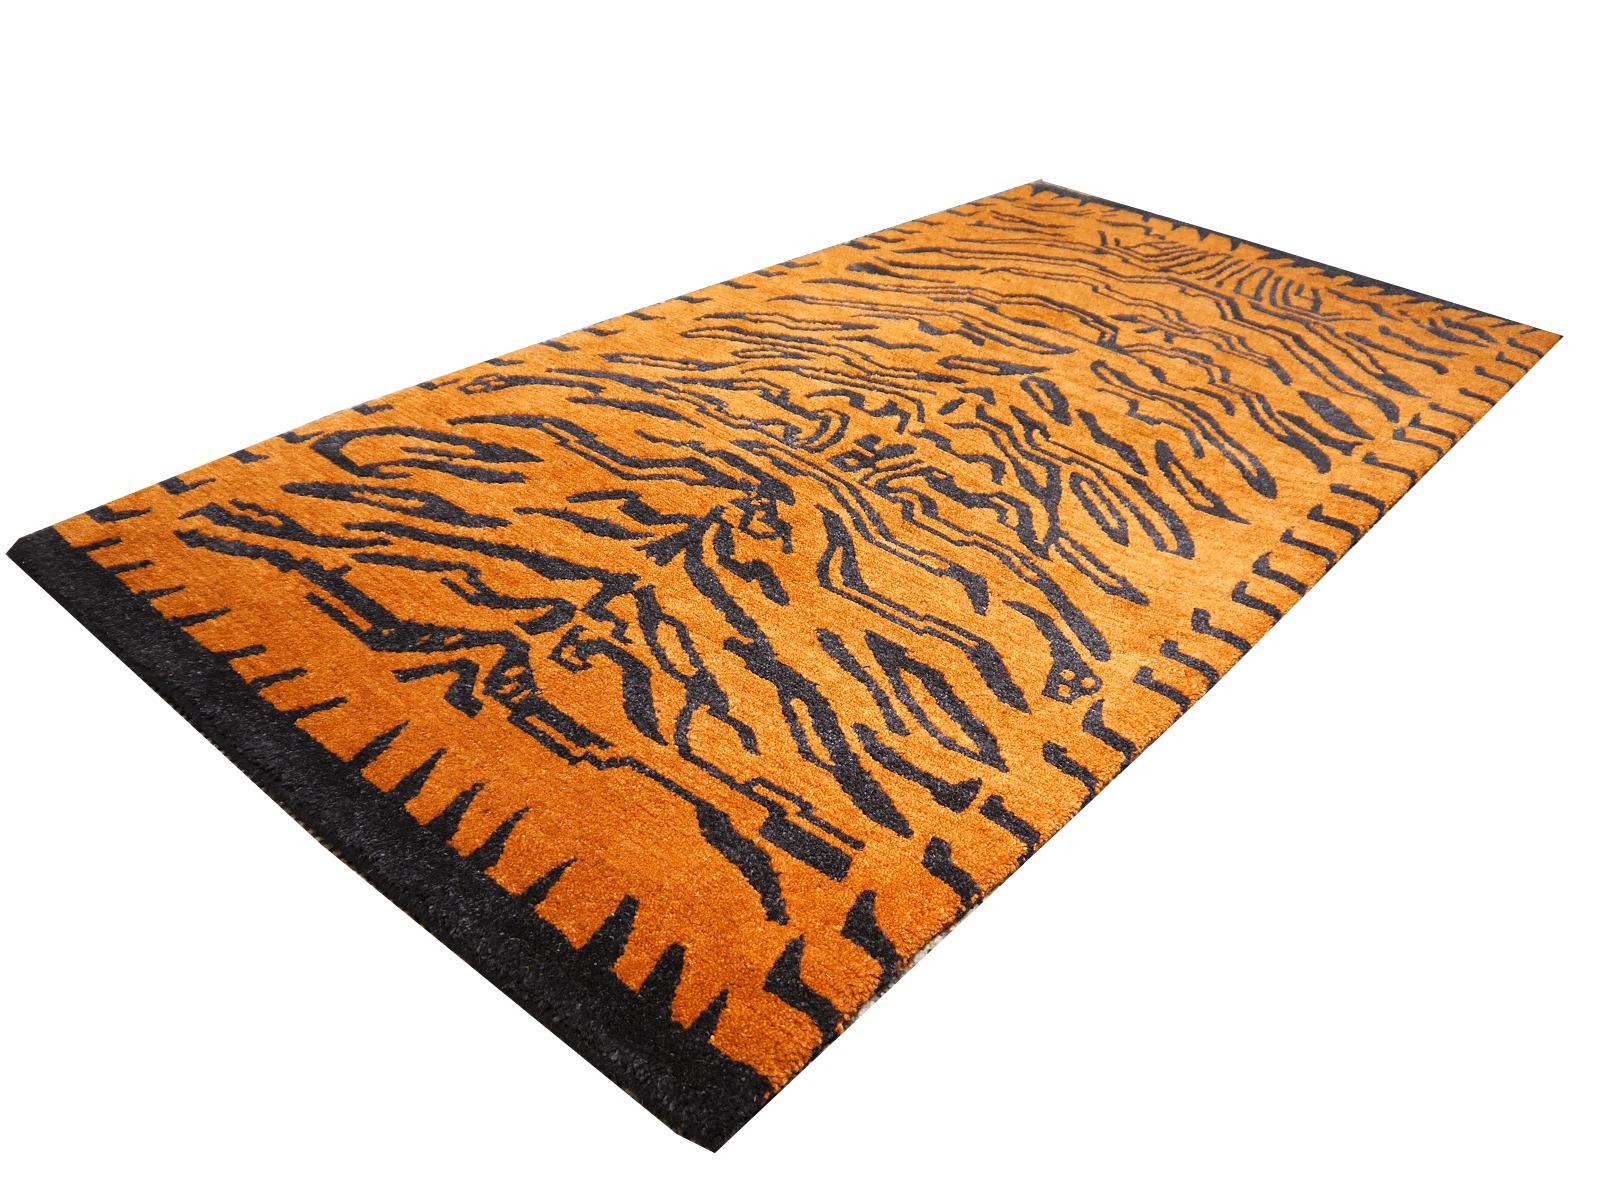 Ein tibetischer Tigerteppich, handgeknüpft in Nepal.

Dieses traditionelle Tiger-Muster findet sich typischerweise auf antiken Teppichen, die Khaden genannt werden. Er beschreibt einen kleinen Teppich von etwa 3 x 6 Fuß, der in Tibet zur Dekoration